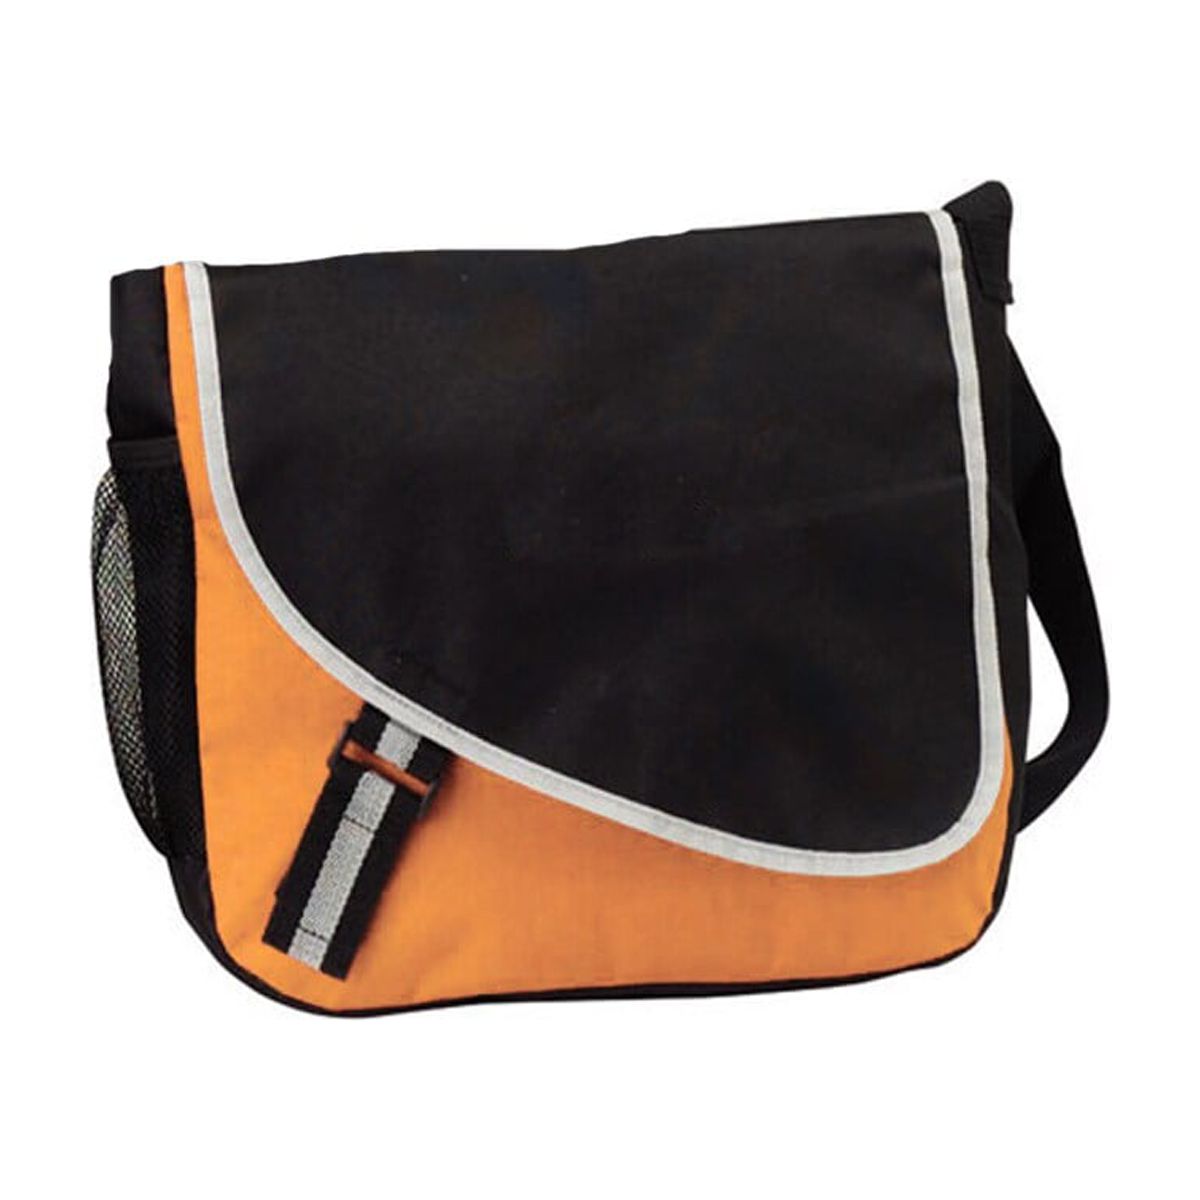 Goodhope  Sporty Messenger Bag Orange - image 1 of 2